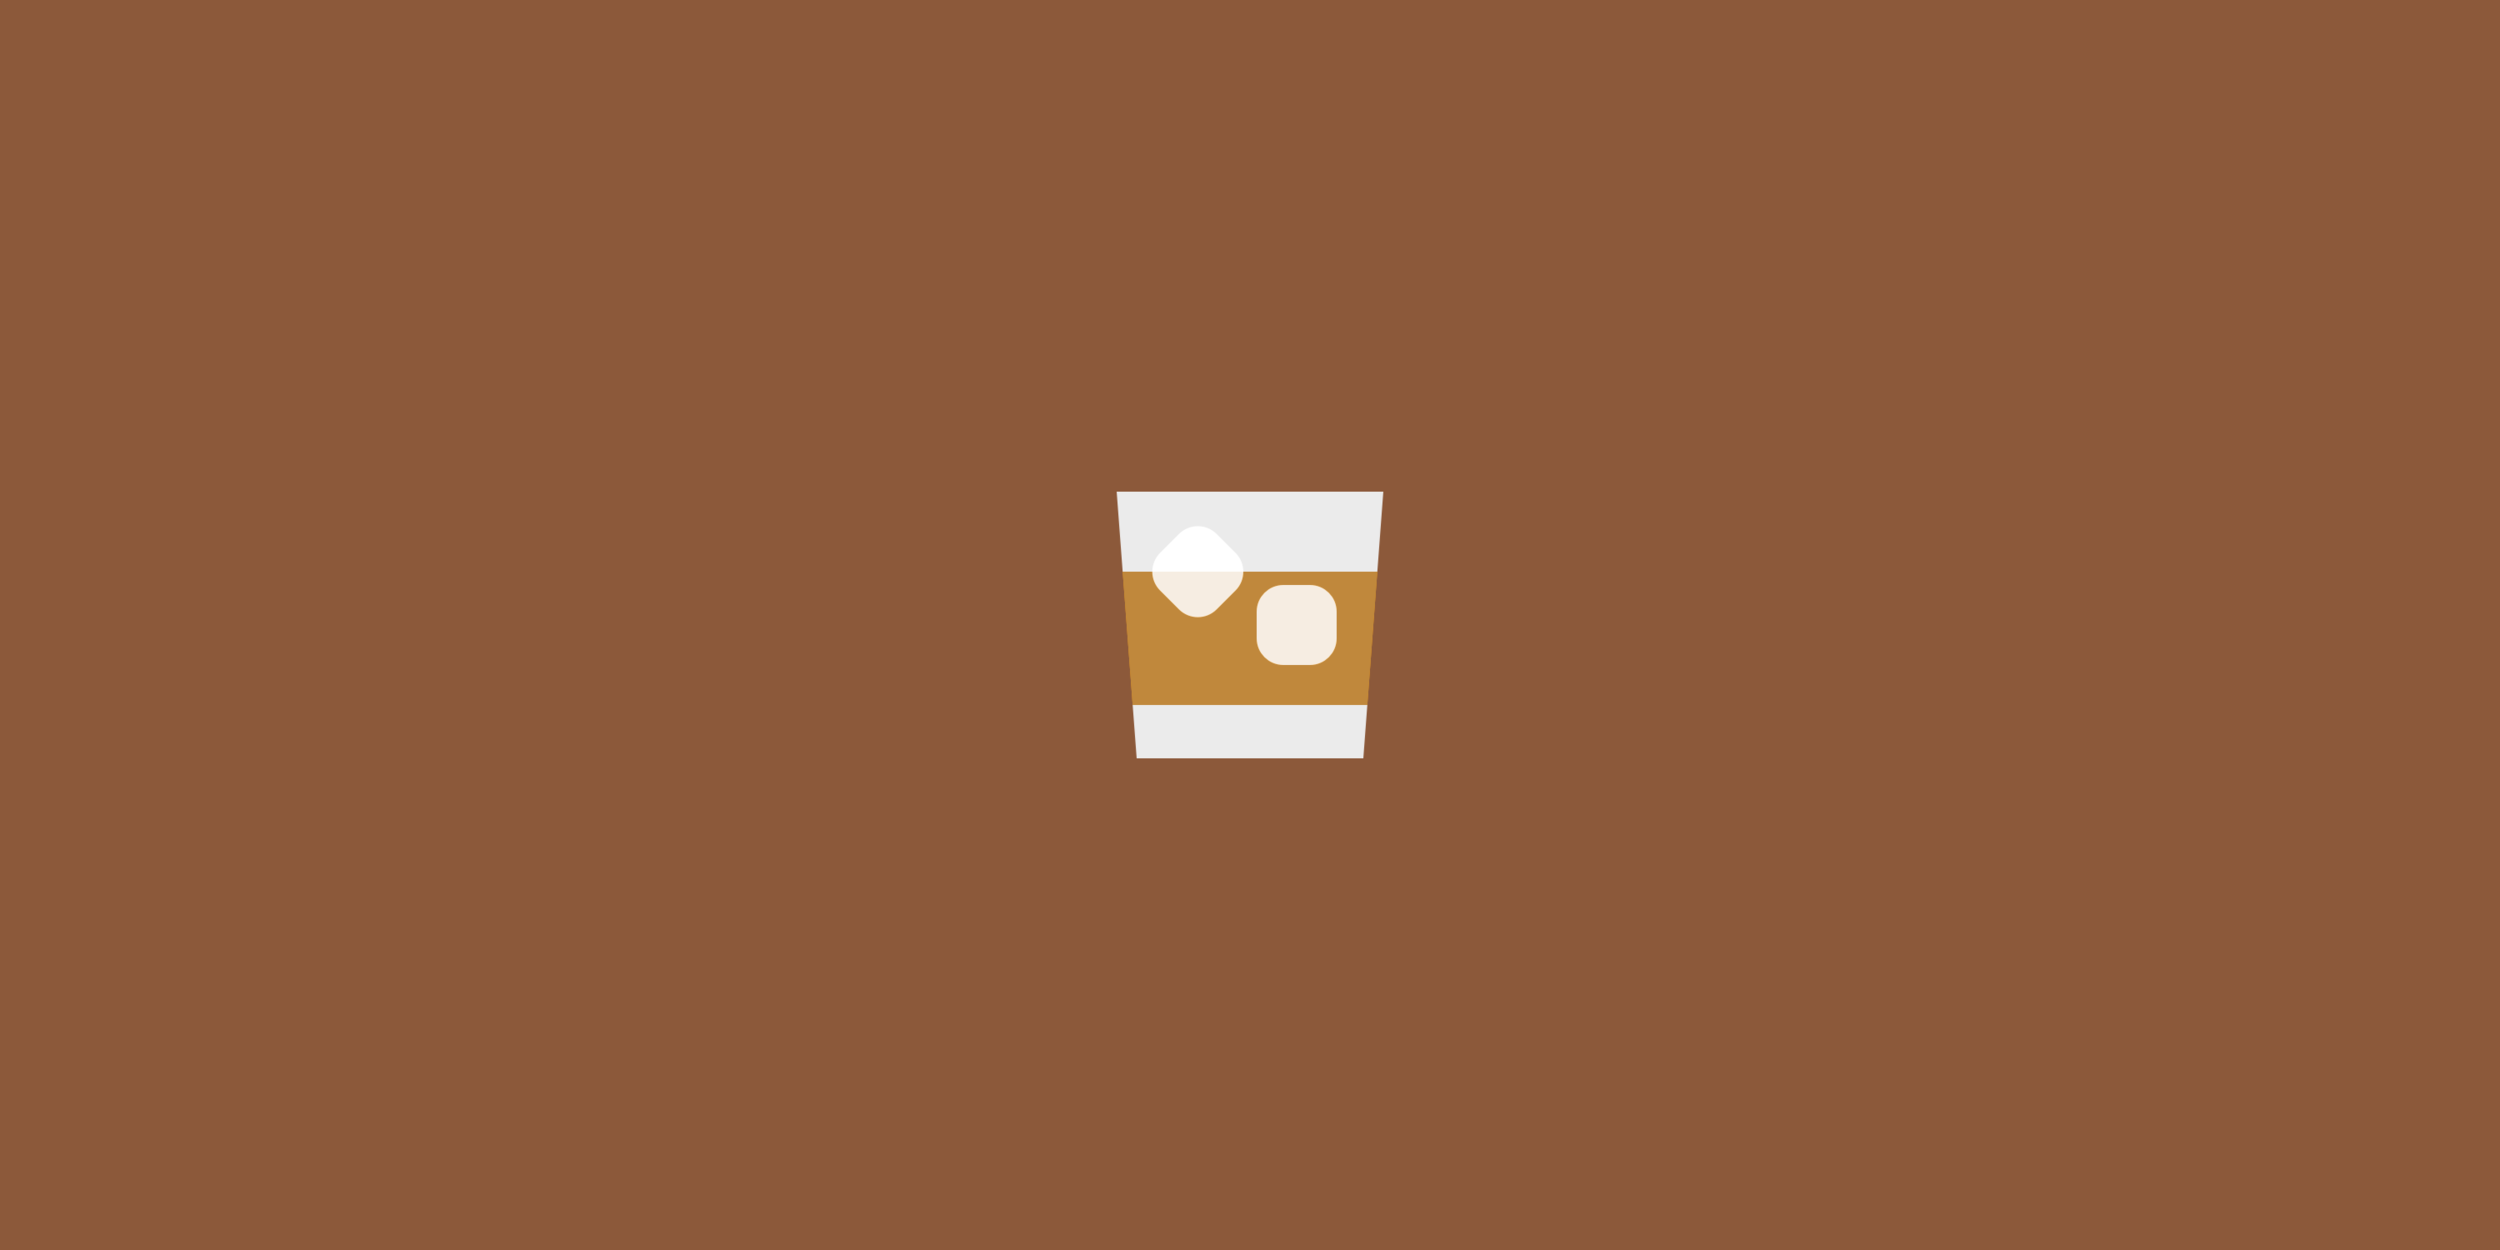 Whiskey Icon